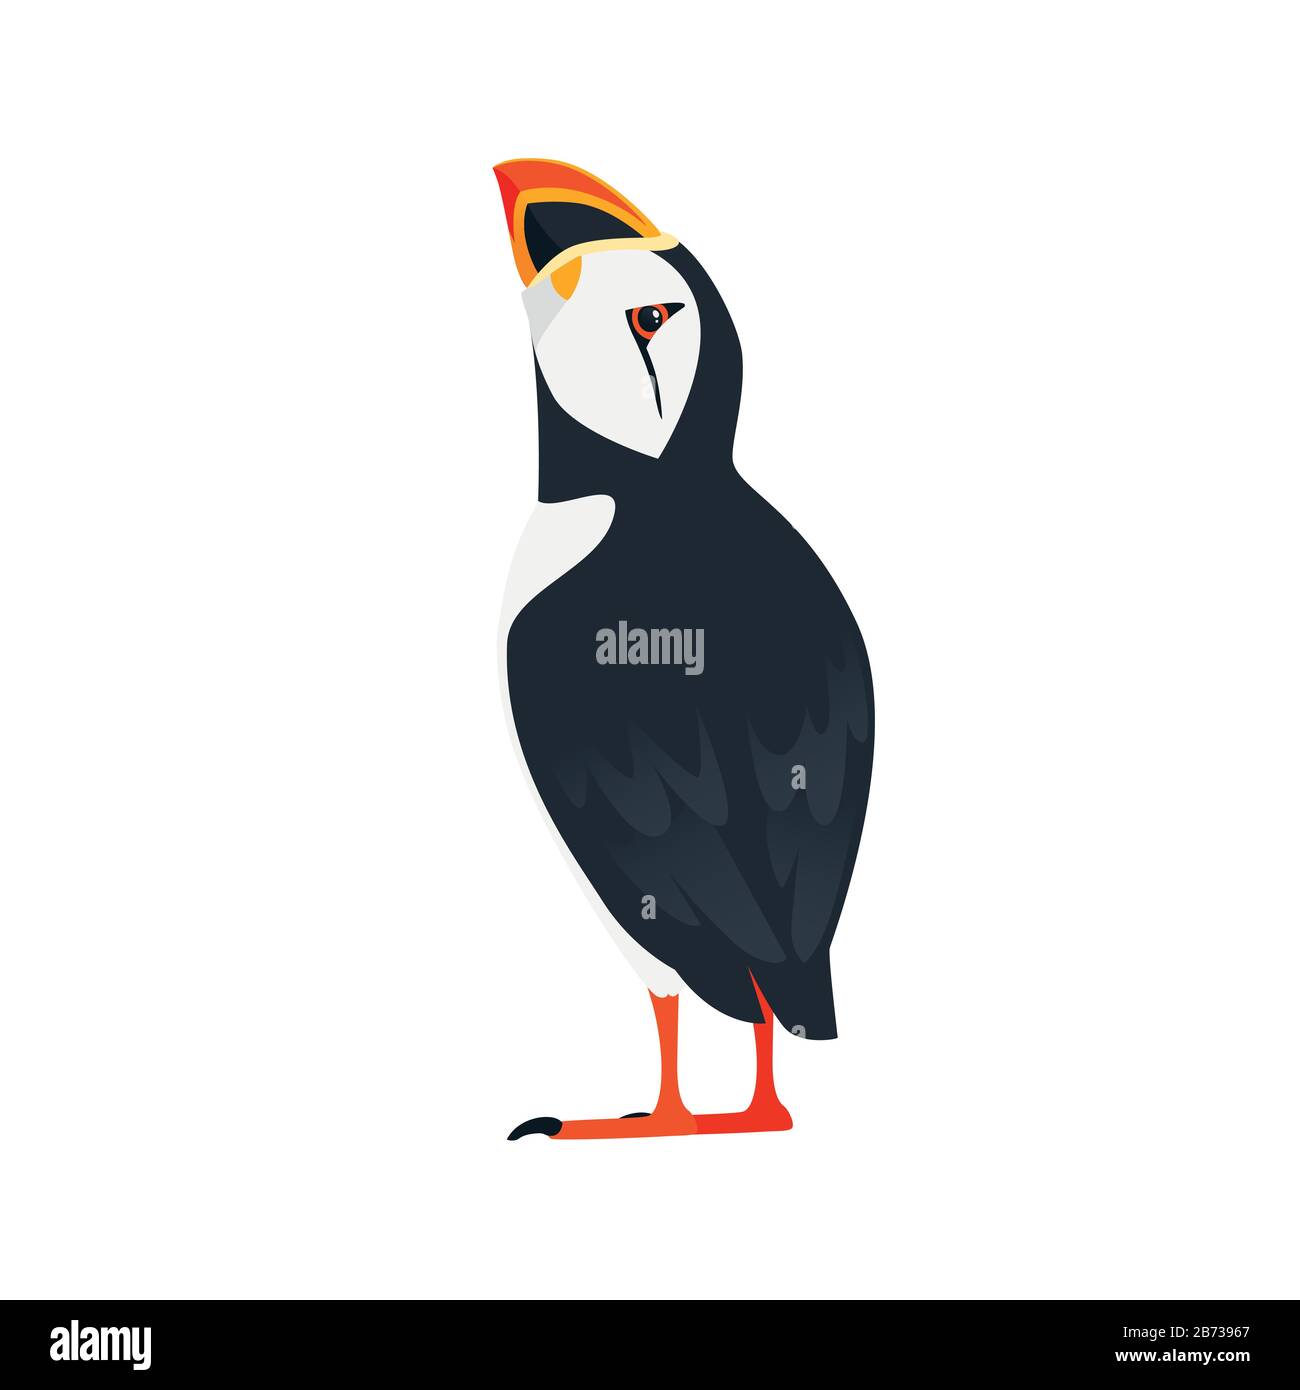 Oiseau de macareux de l'Atlantique Rejetez un regard sur le dessin d'animal de caricature supérieur illustration vectorielle plate isolée sur fond blanc. Illustration de Vecteur